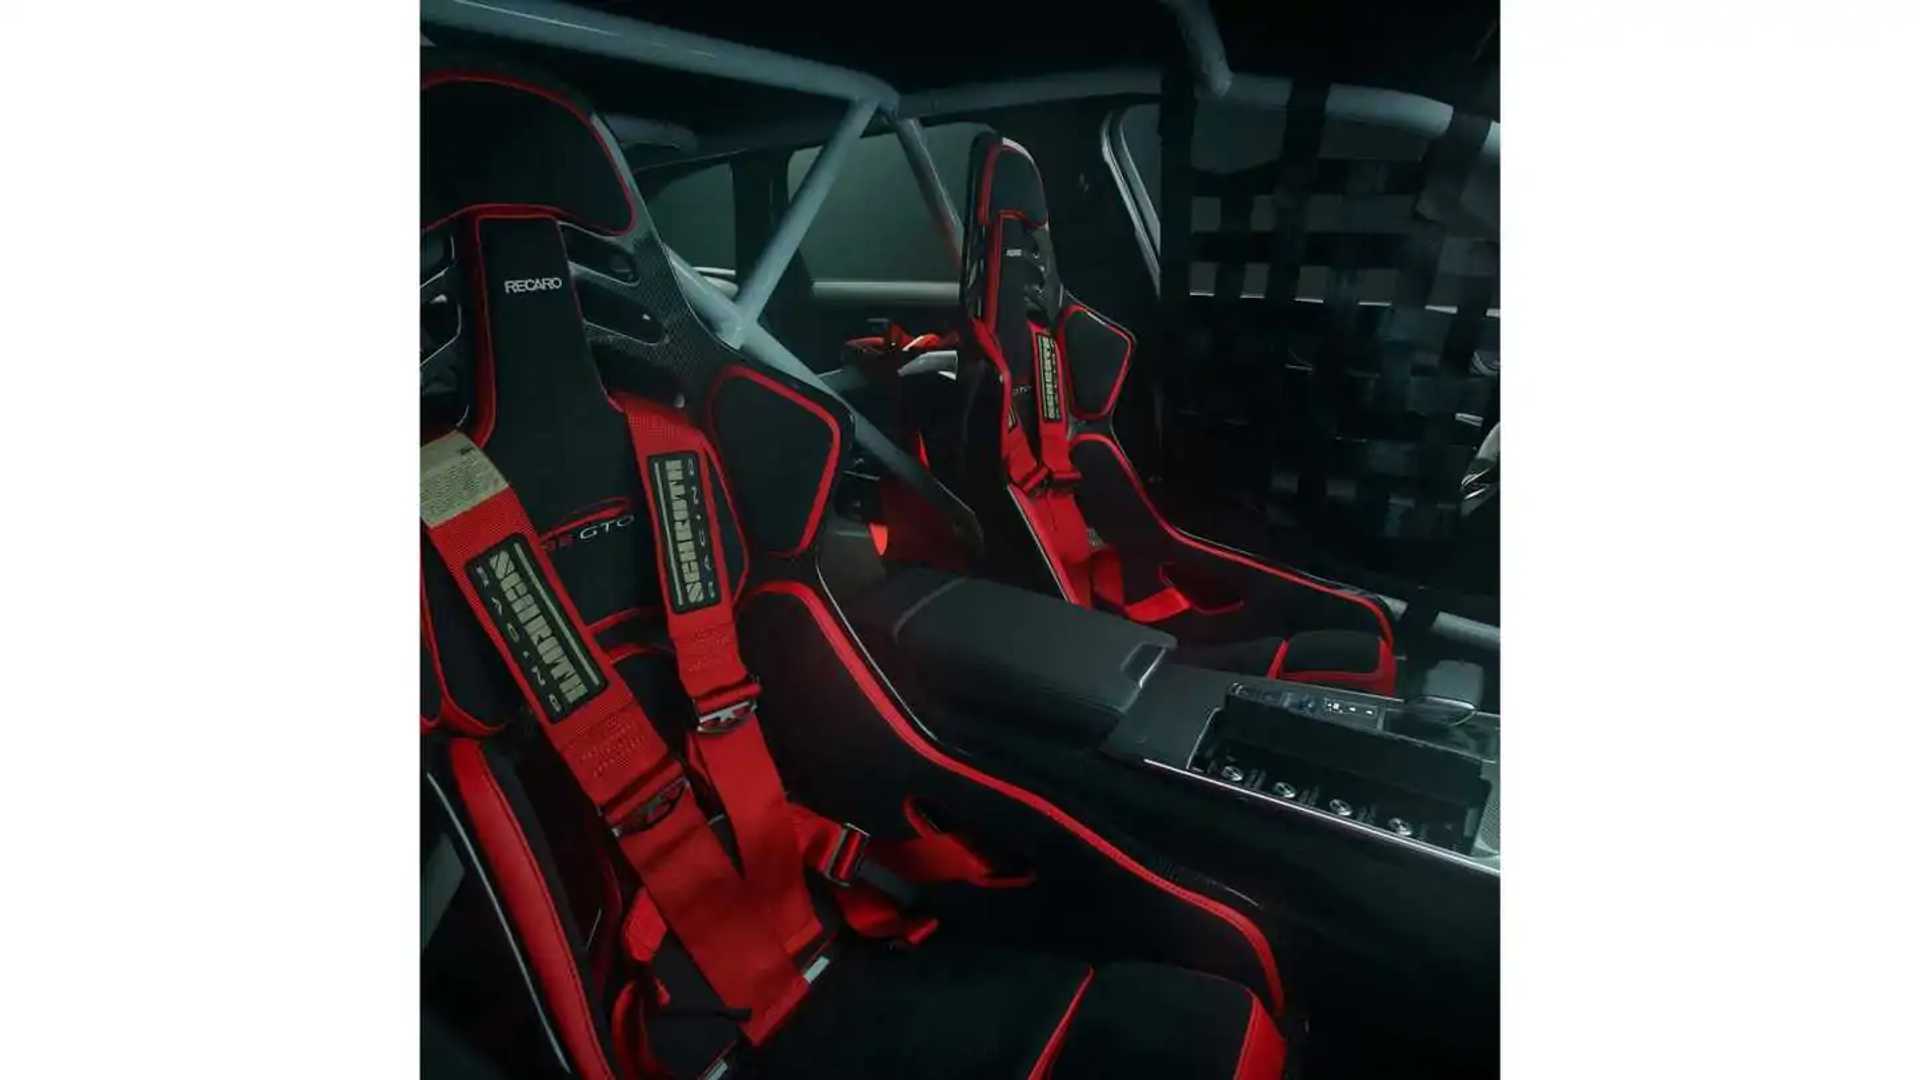 2020 Audi RS6 GTO Concept